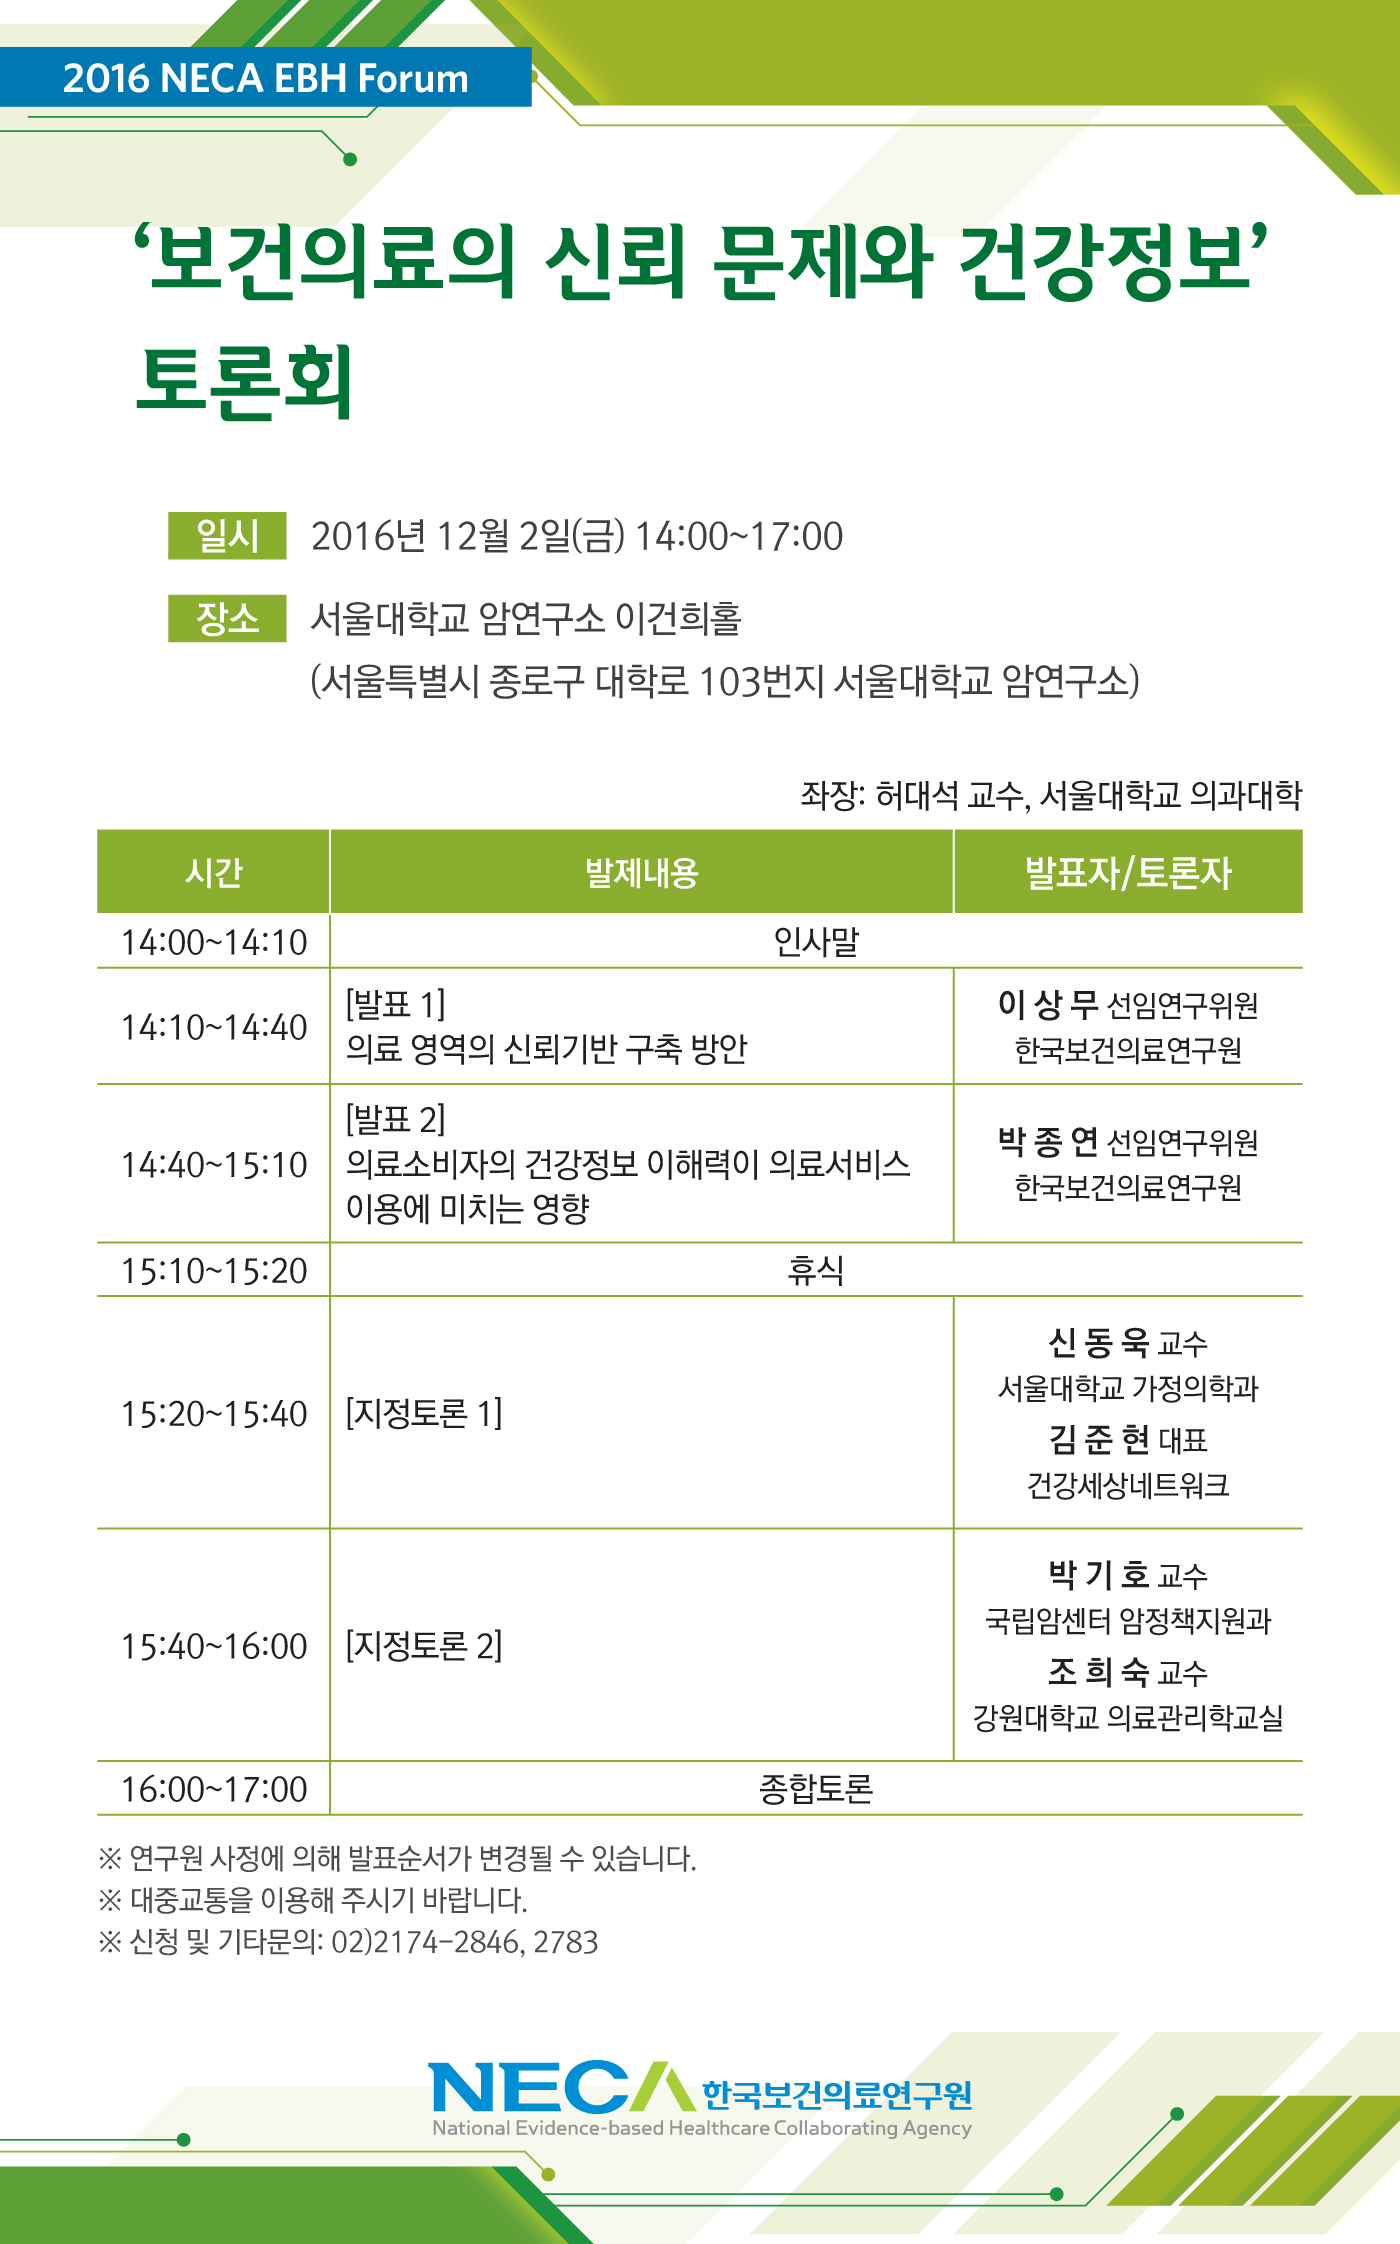 제21차 NECA EBH Forum 개최안내 